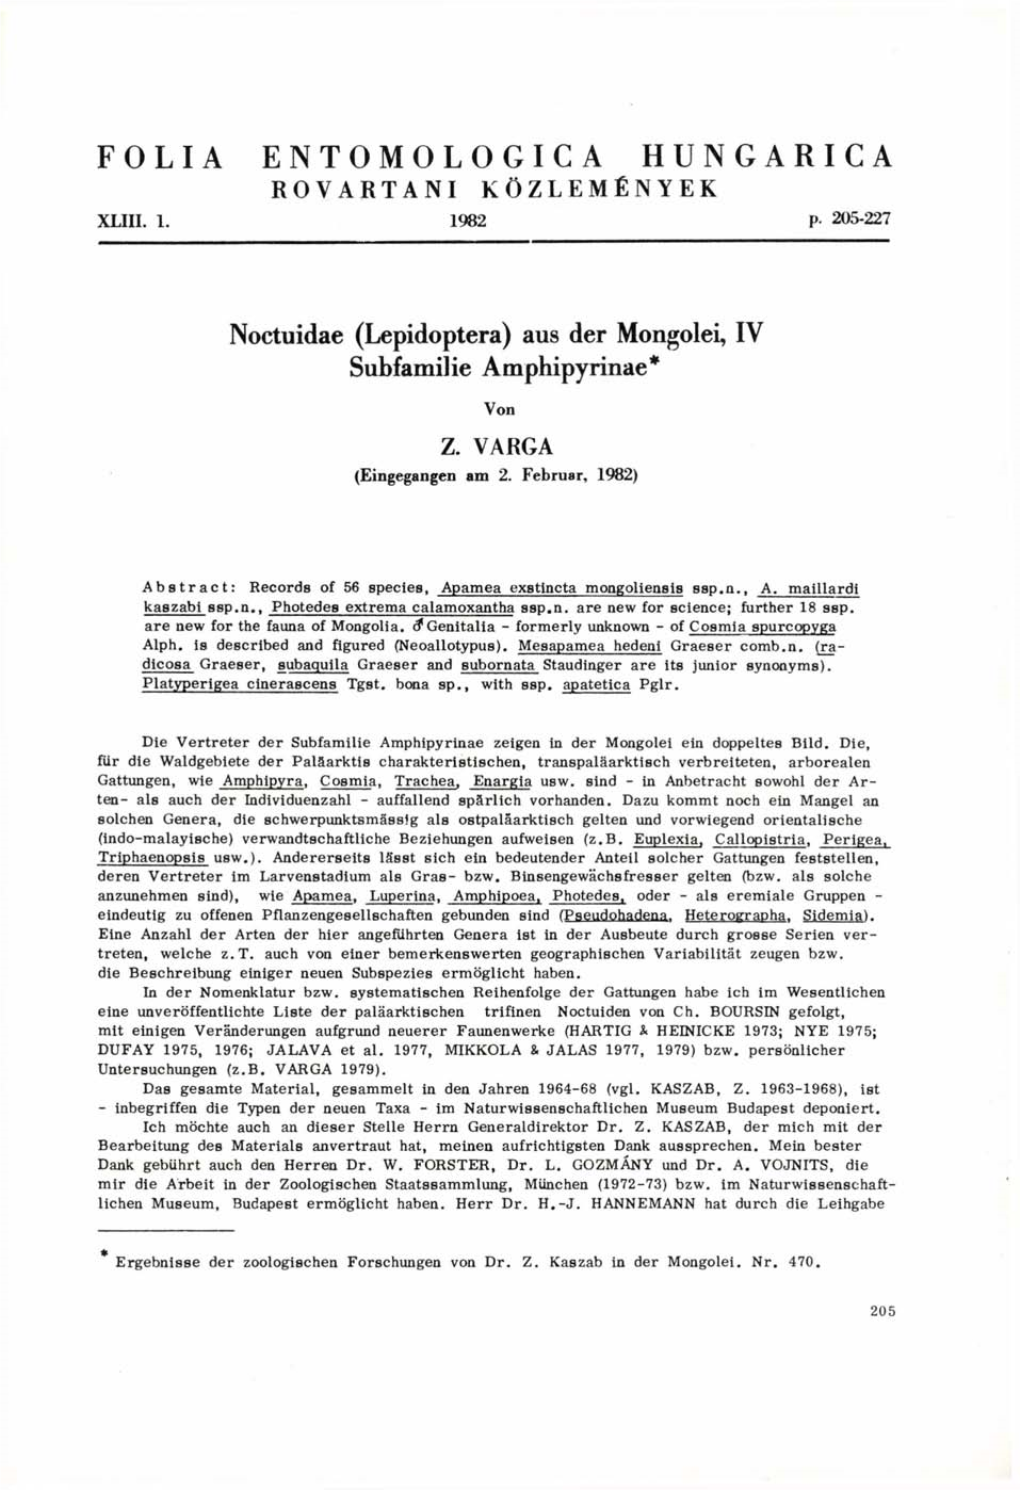 Folia Entomologica Hungarica 43/1. (Budapest, 1982)